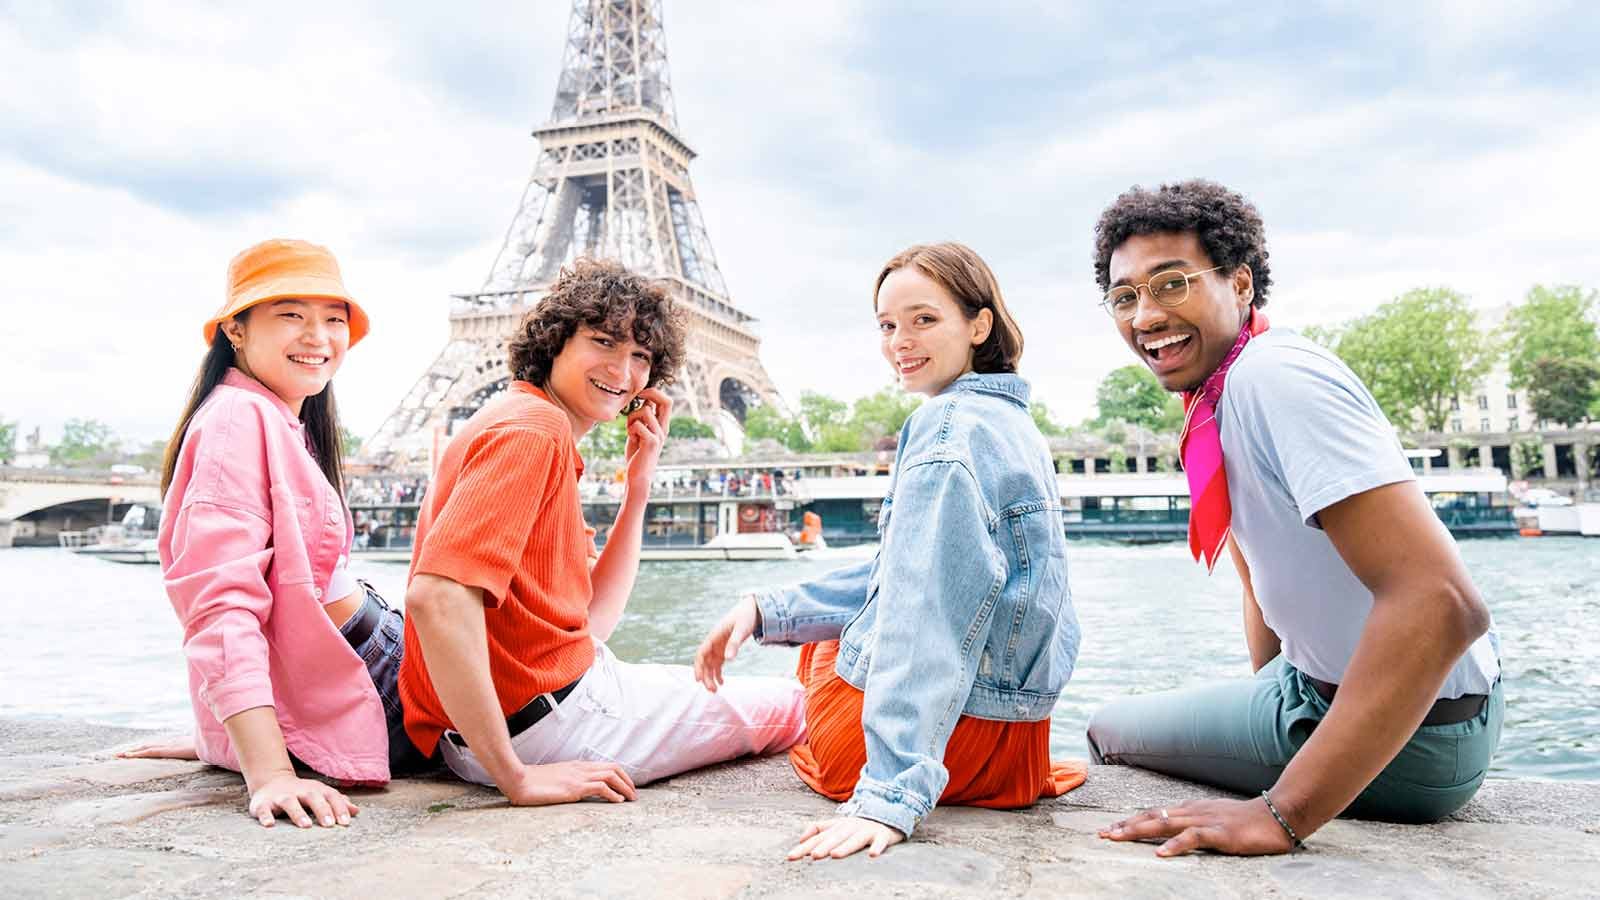 Bonus gite scolastiche: giovani studenti davanti alla Tour Eiffel